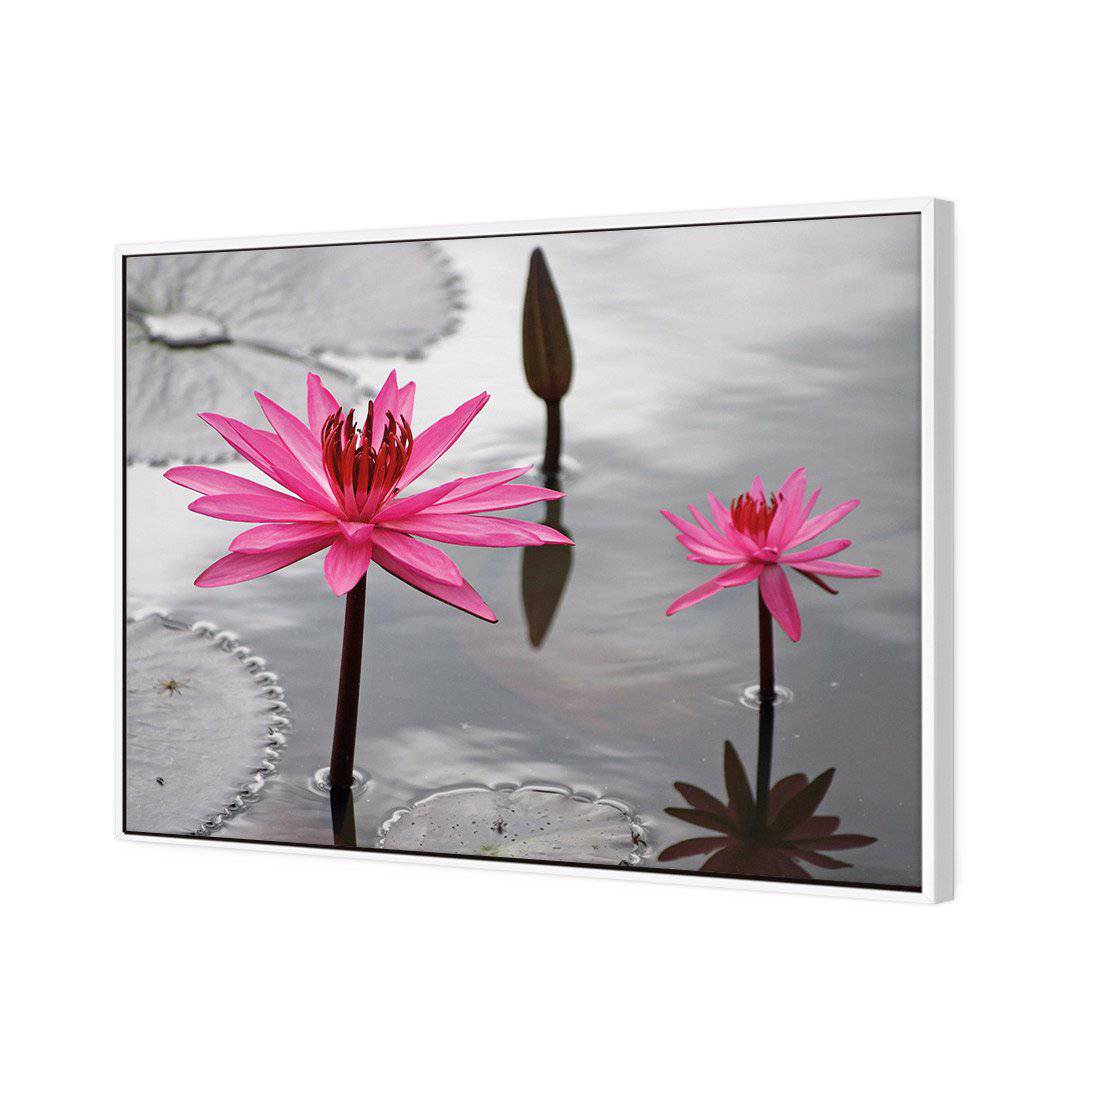 Pop Pink Lilies Canvas Art-Canvas-Wall Art Designs-45x30cm-Canvas - White Frame-Wall Art Designs